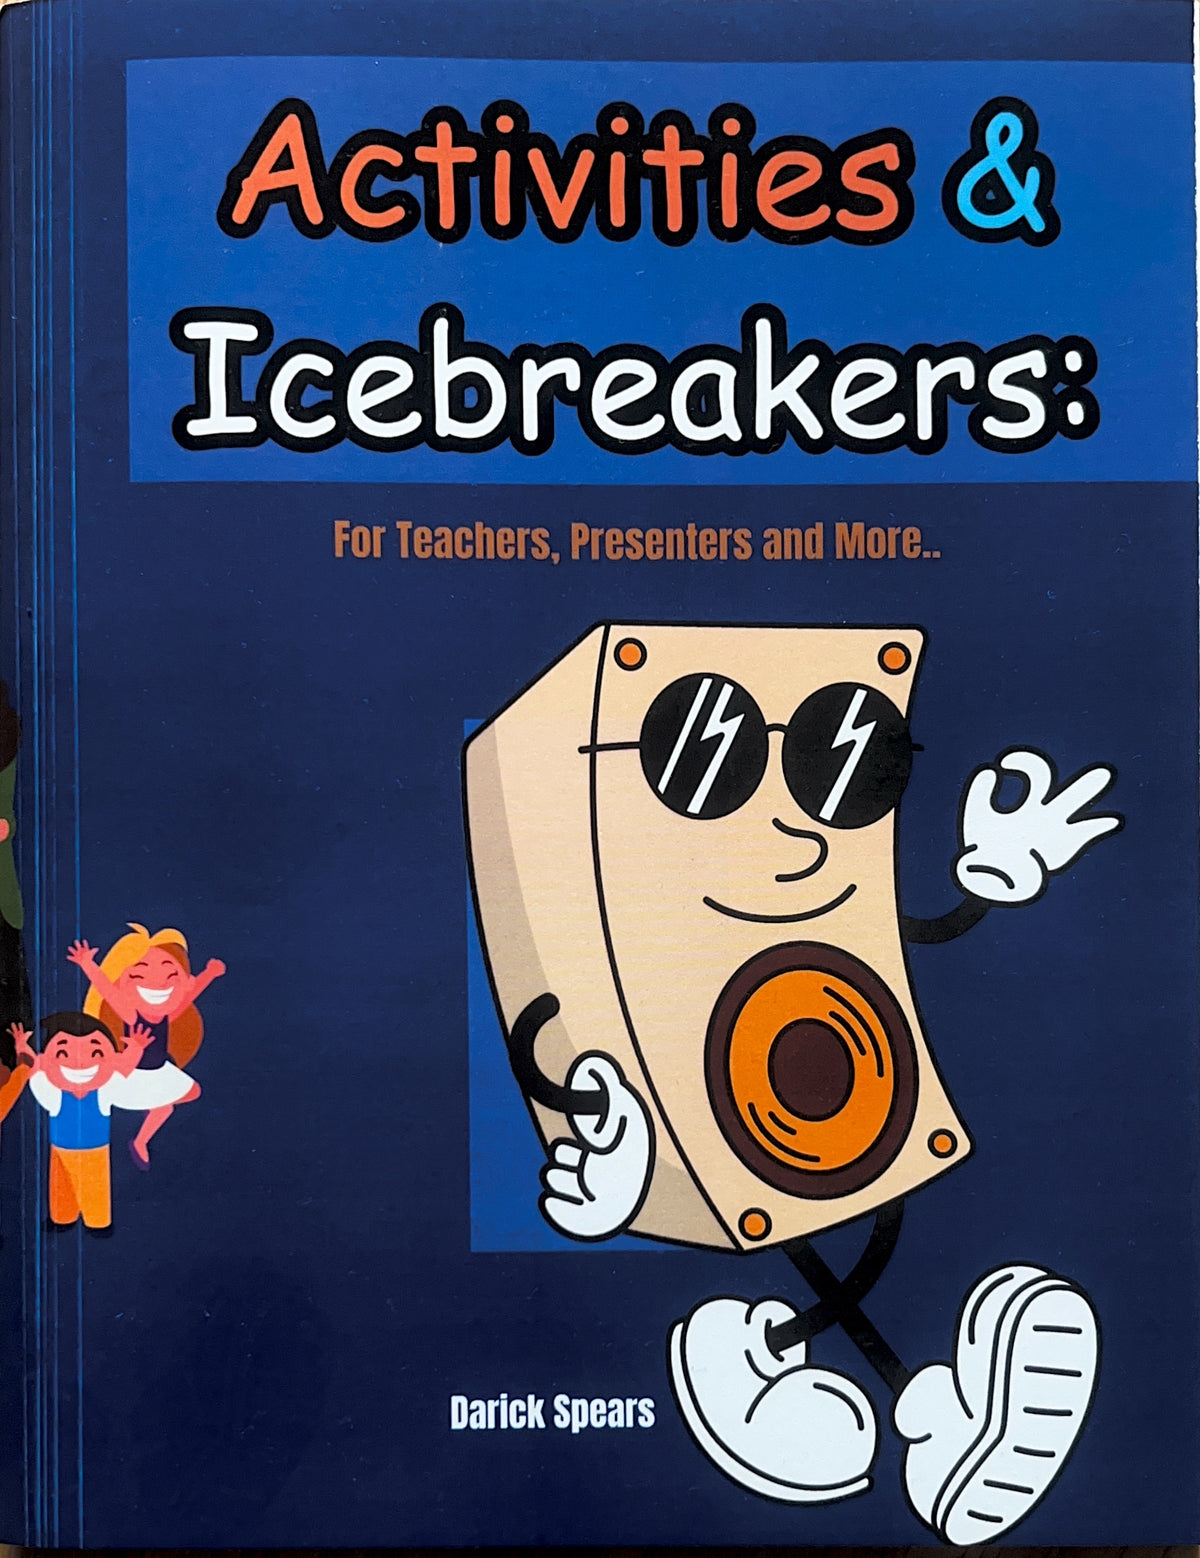 Activities & Icebreakers for Teachers, Presenters & More.